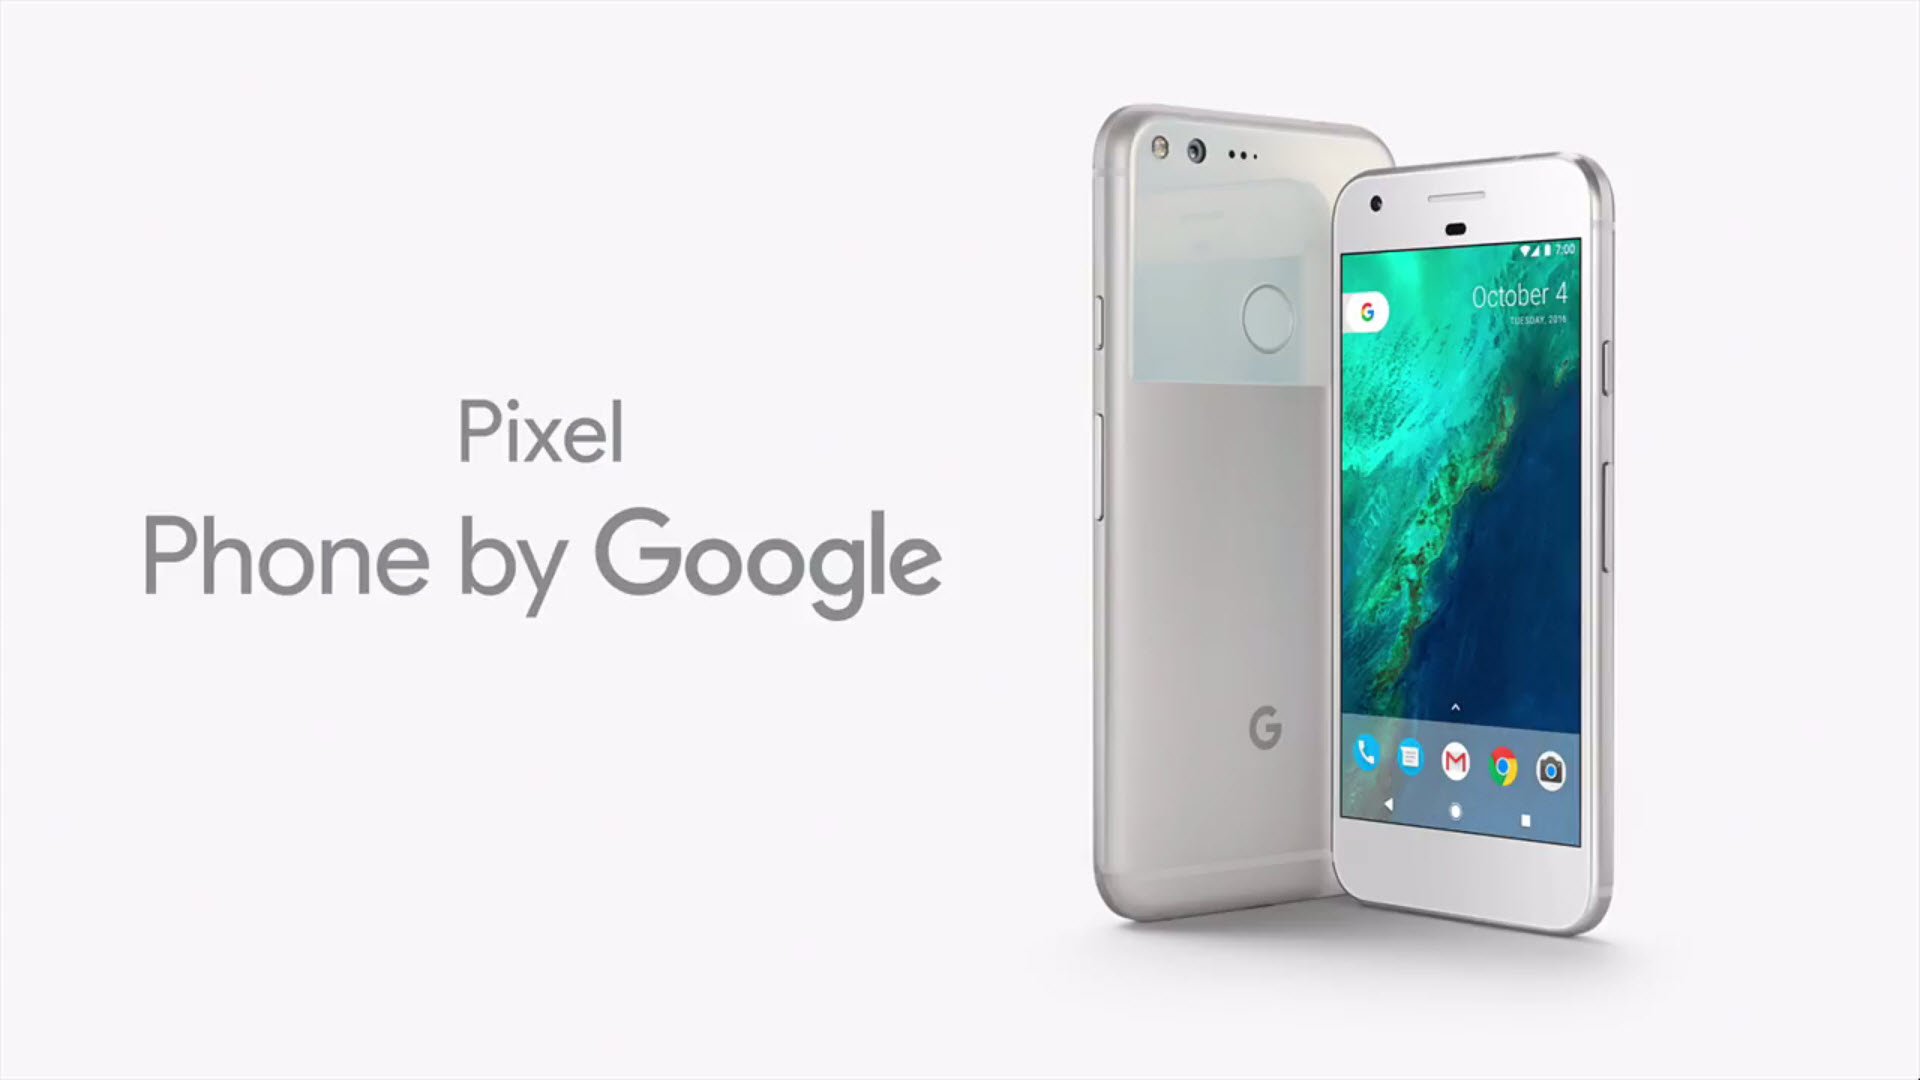 Google ยอมรับ Pixel แพงจริง ไม่เน้นยอดขาย แต่เน้นความพึงพอใจของผู้ใช้